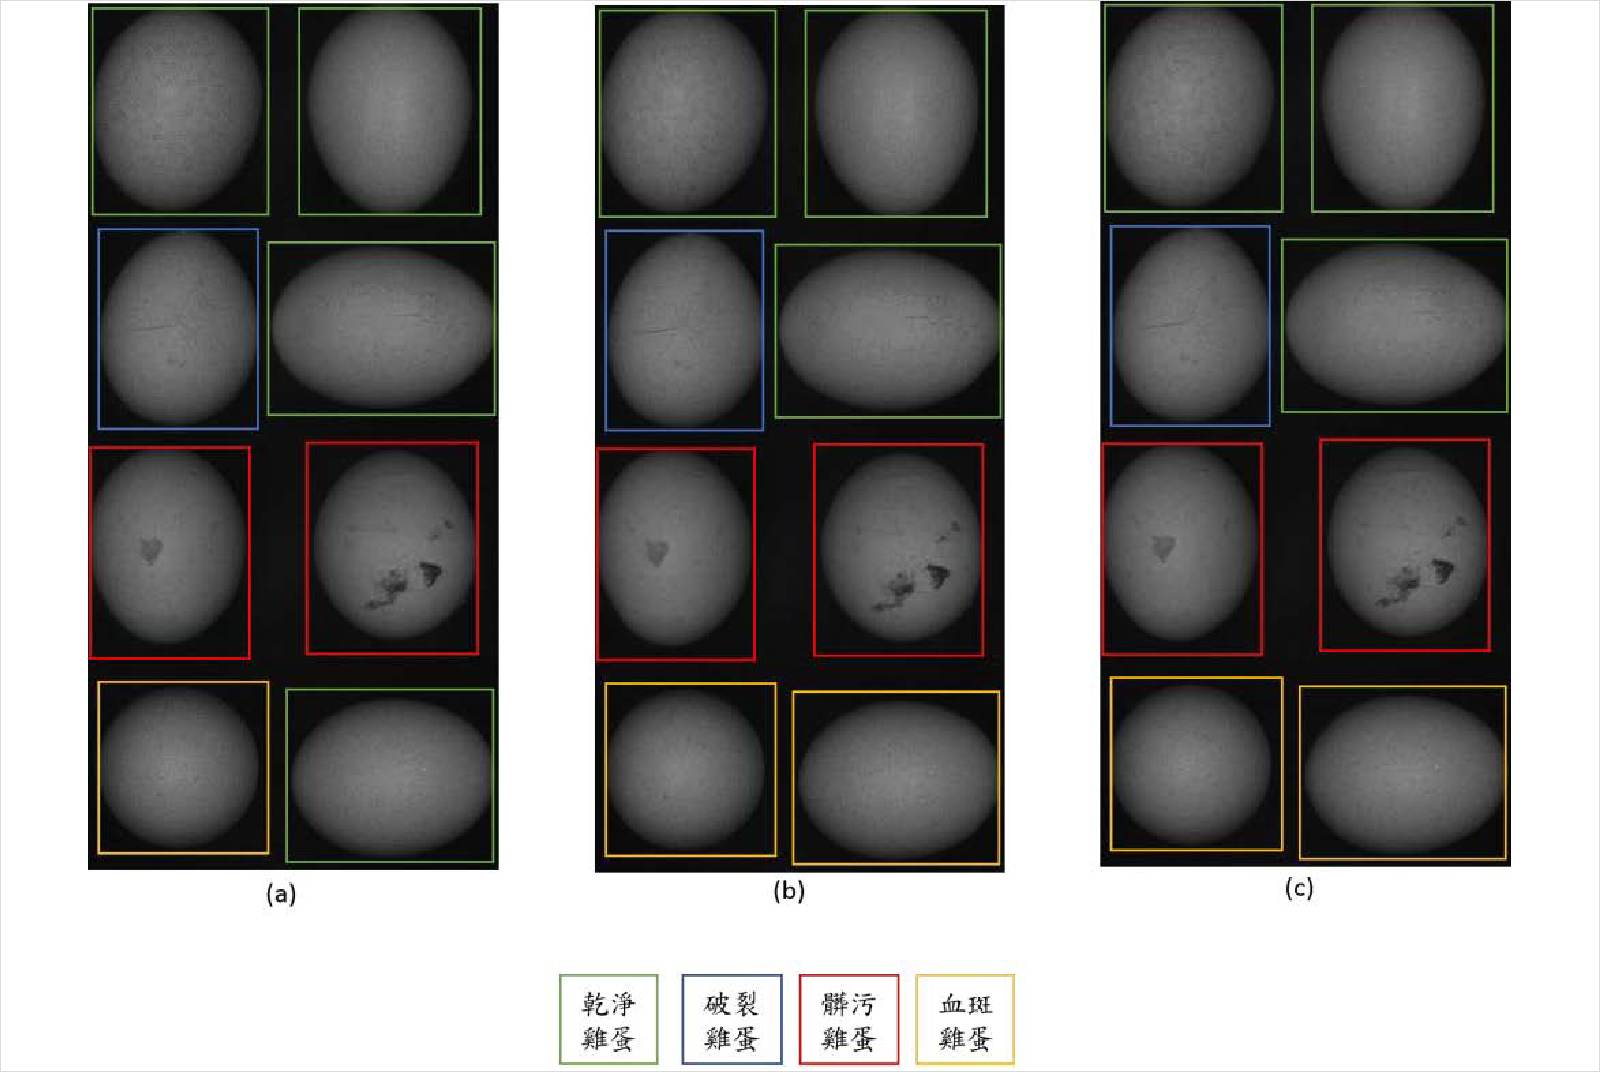 高光譜解析度較高、對訊號的變化更敏銳，可精細地篩選出瑕疵蛋。